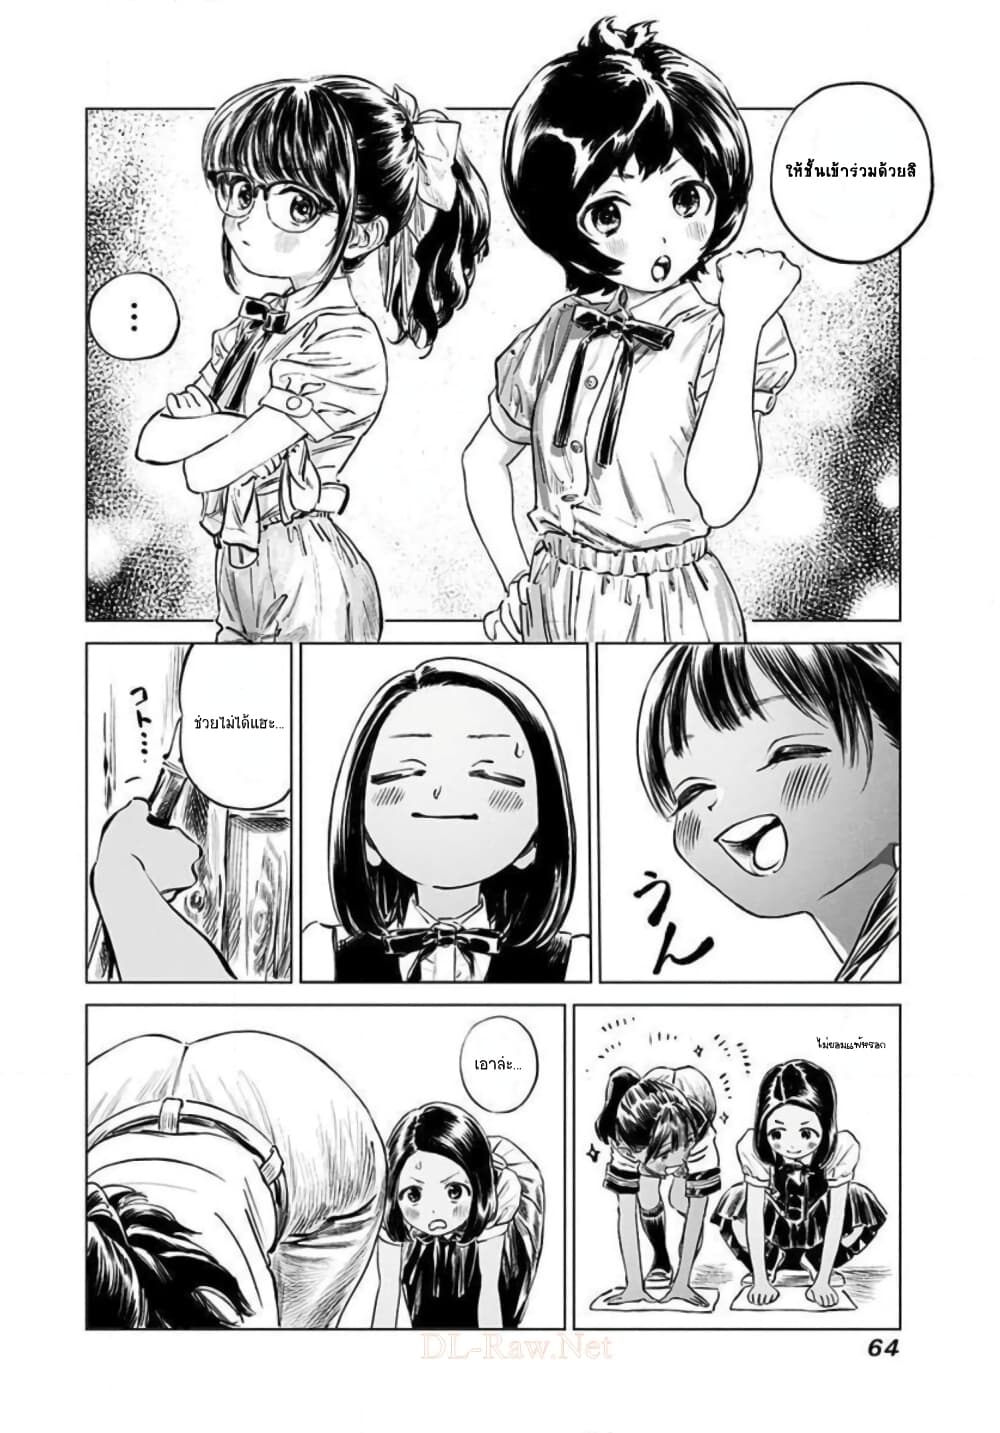 Akebi chan no Sailor Fuku 48 (6)